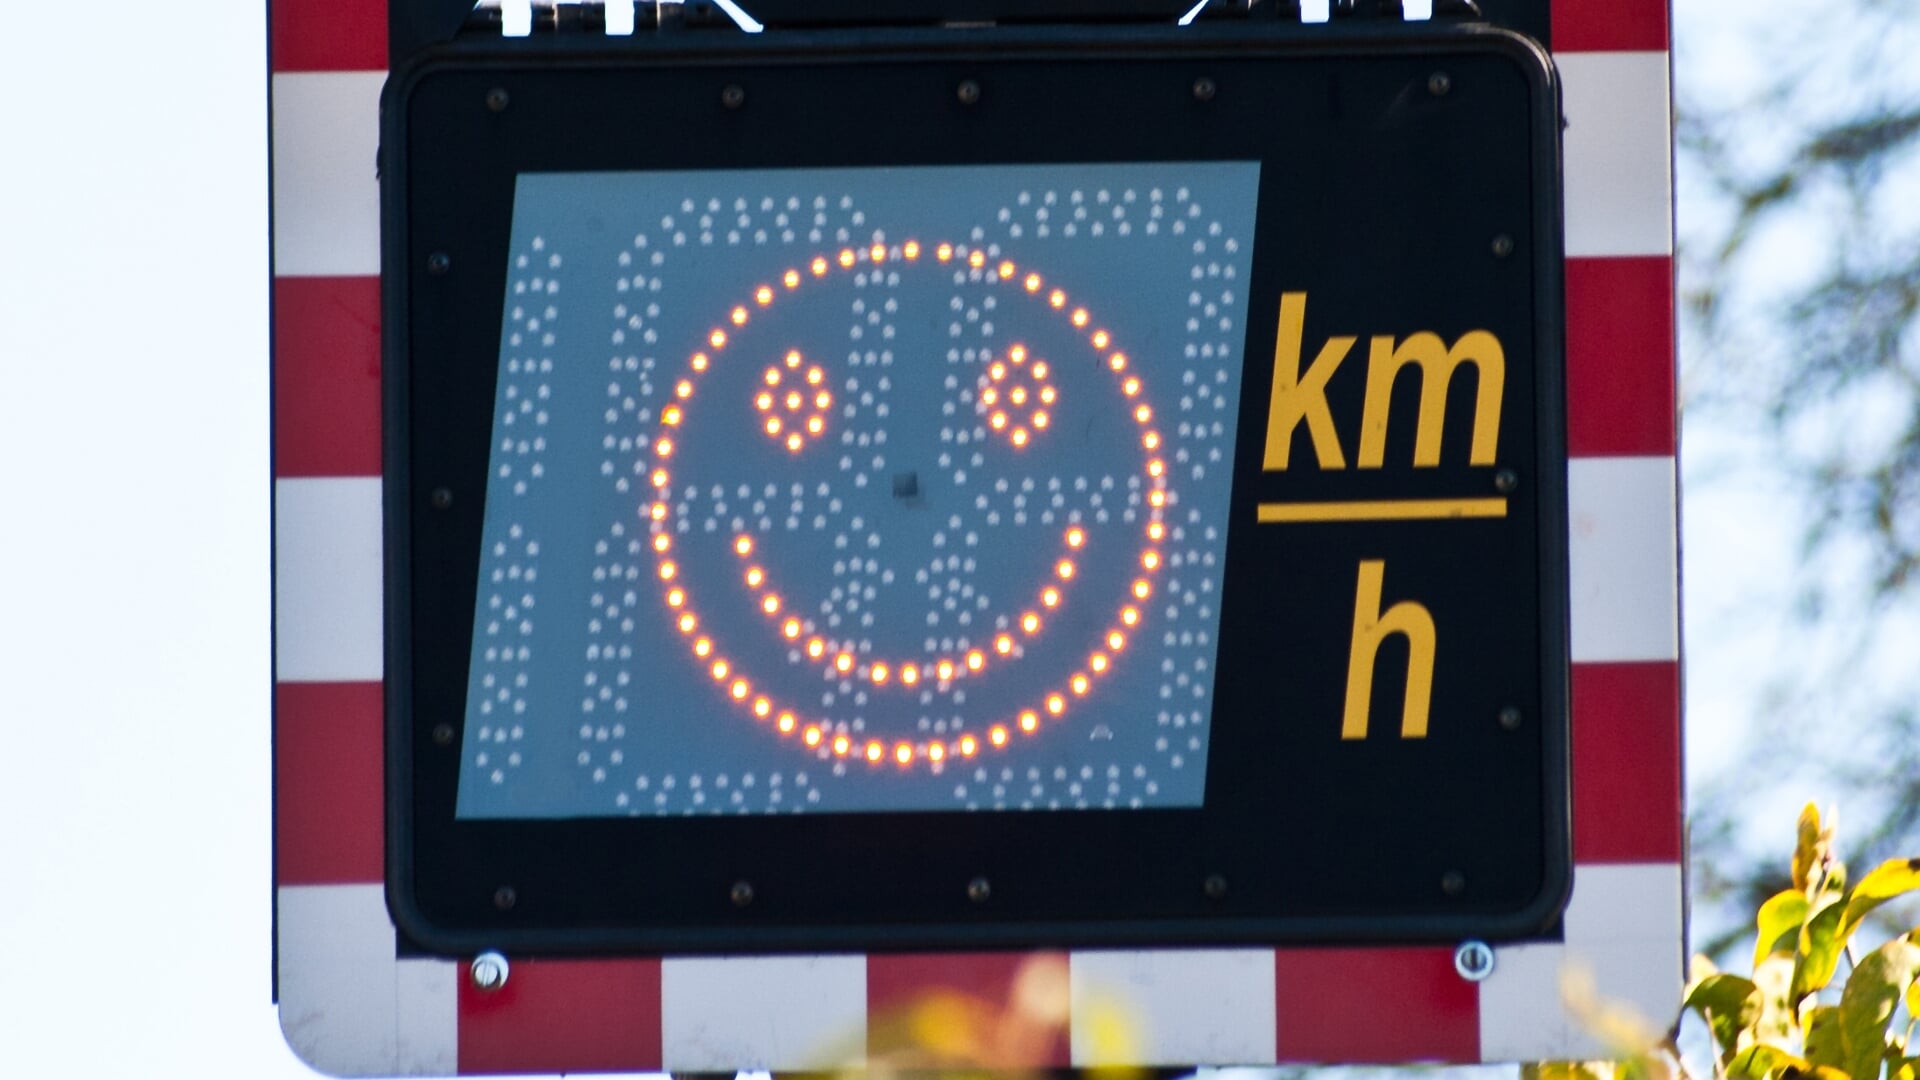 Met smileys wil de gemeente de automobilisten op de Ambachtsweg attenderen op de maximum snelheid.